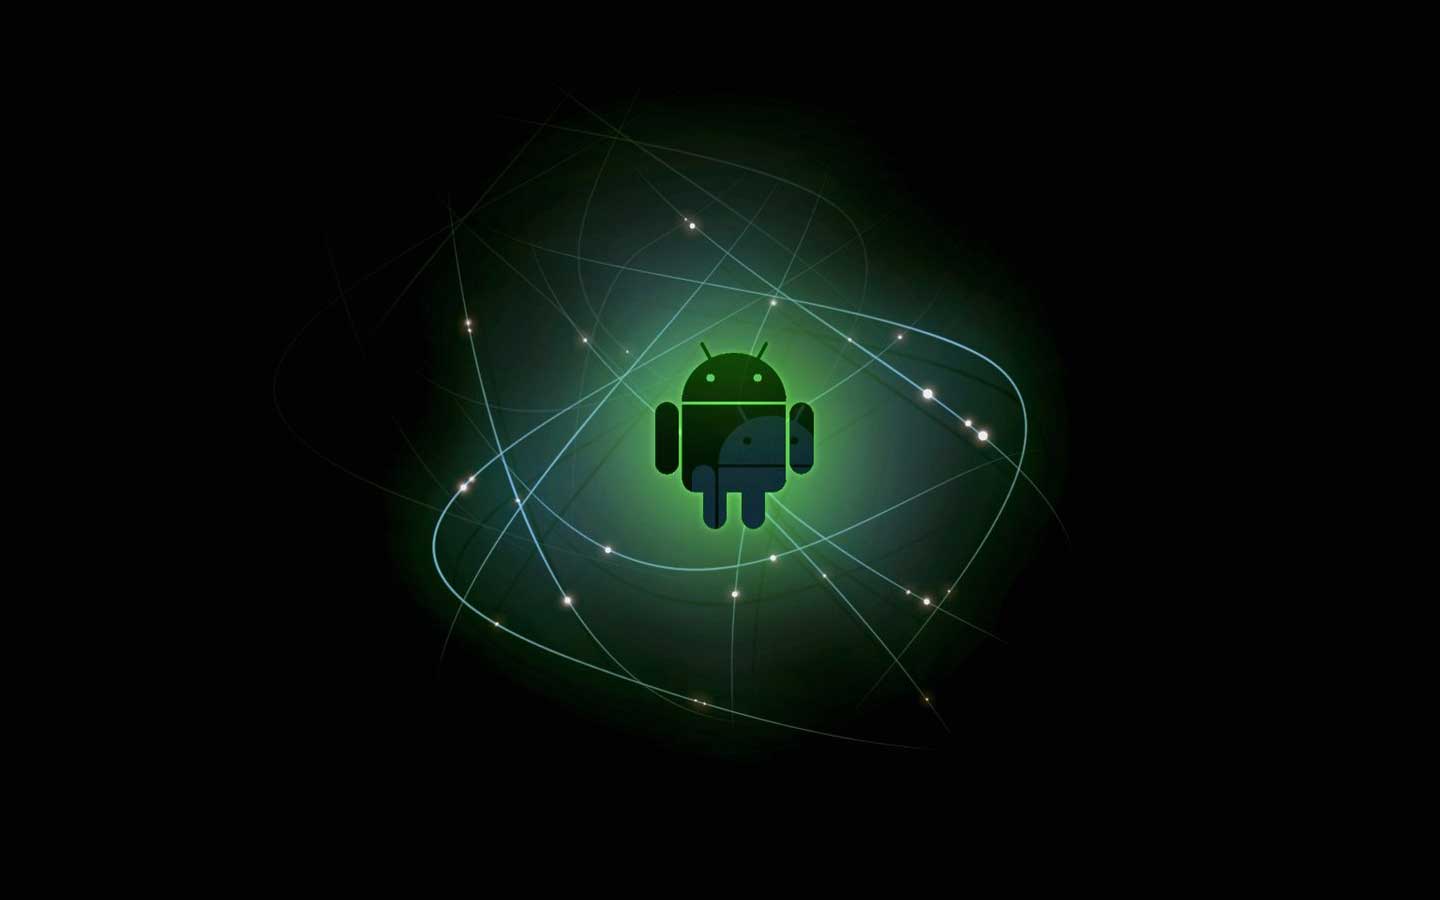 Android Dark Wallpaper